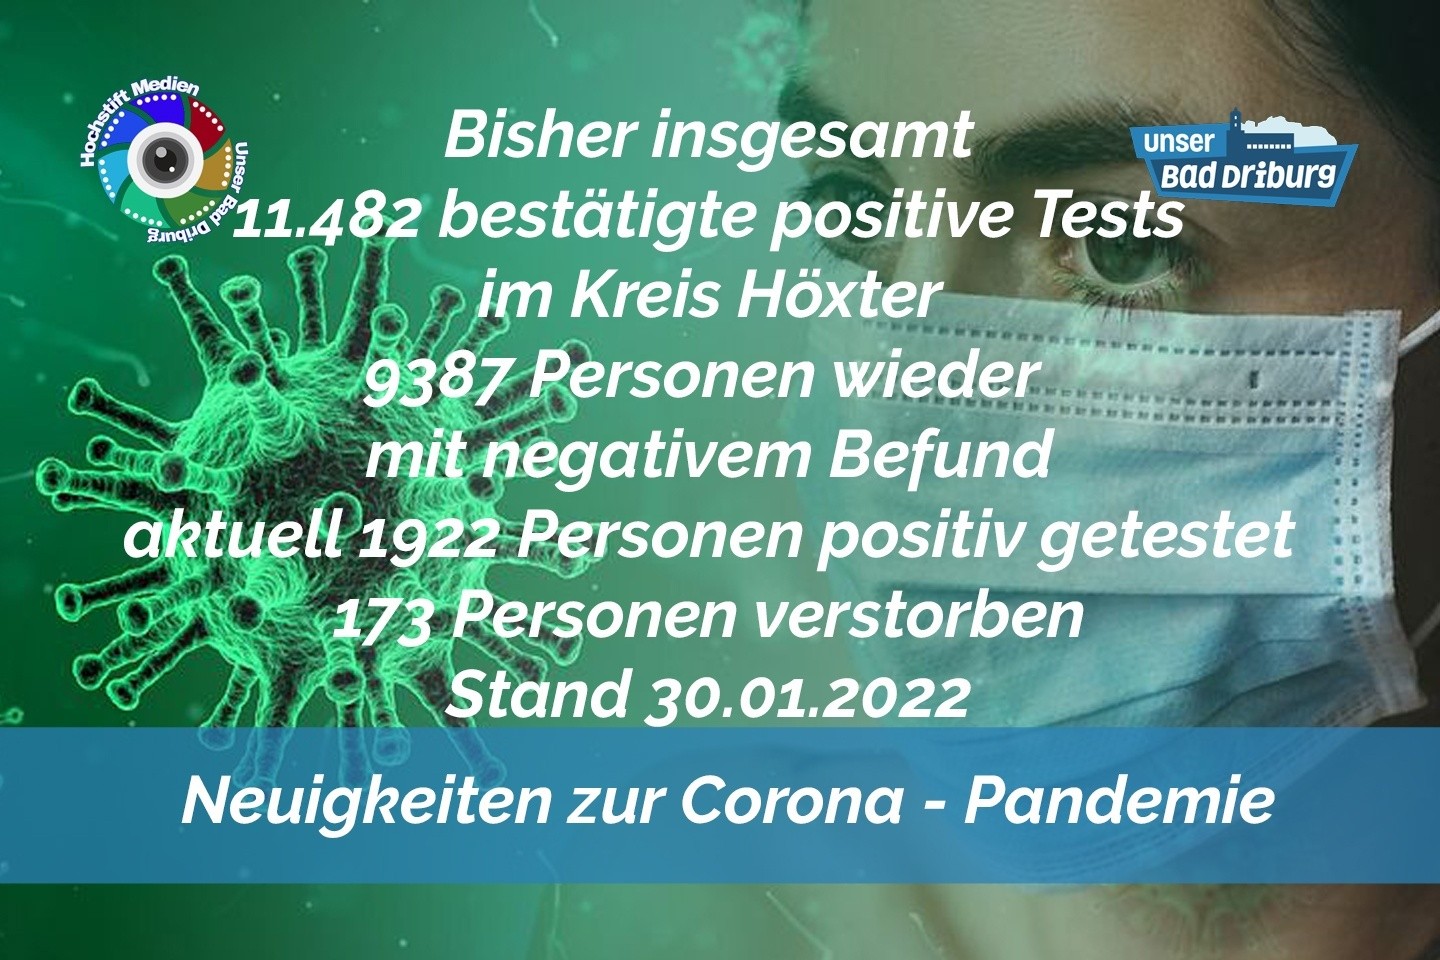 Update 30. Januar 2022: 201 weitere amtlich positive Tests im Kreis Höxter